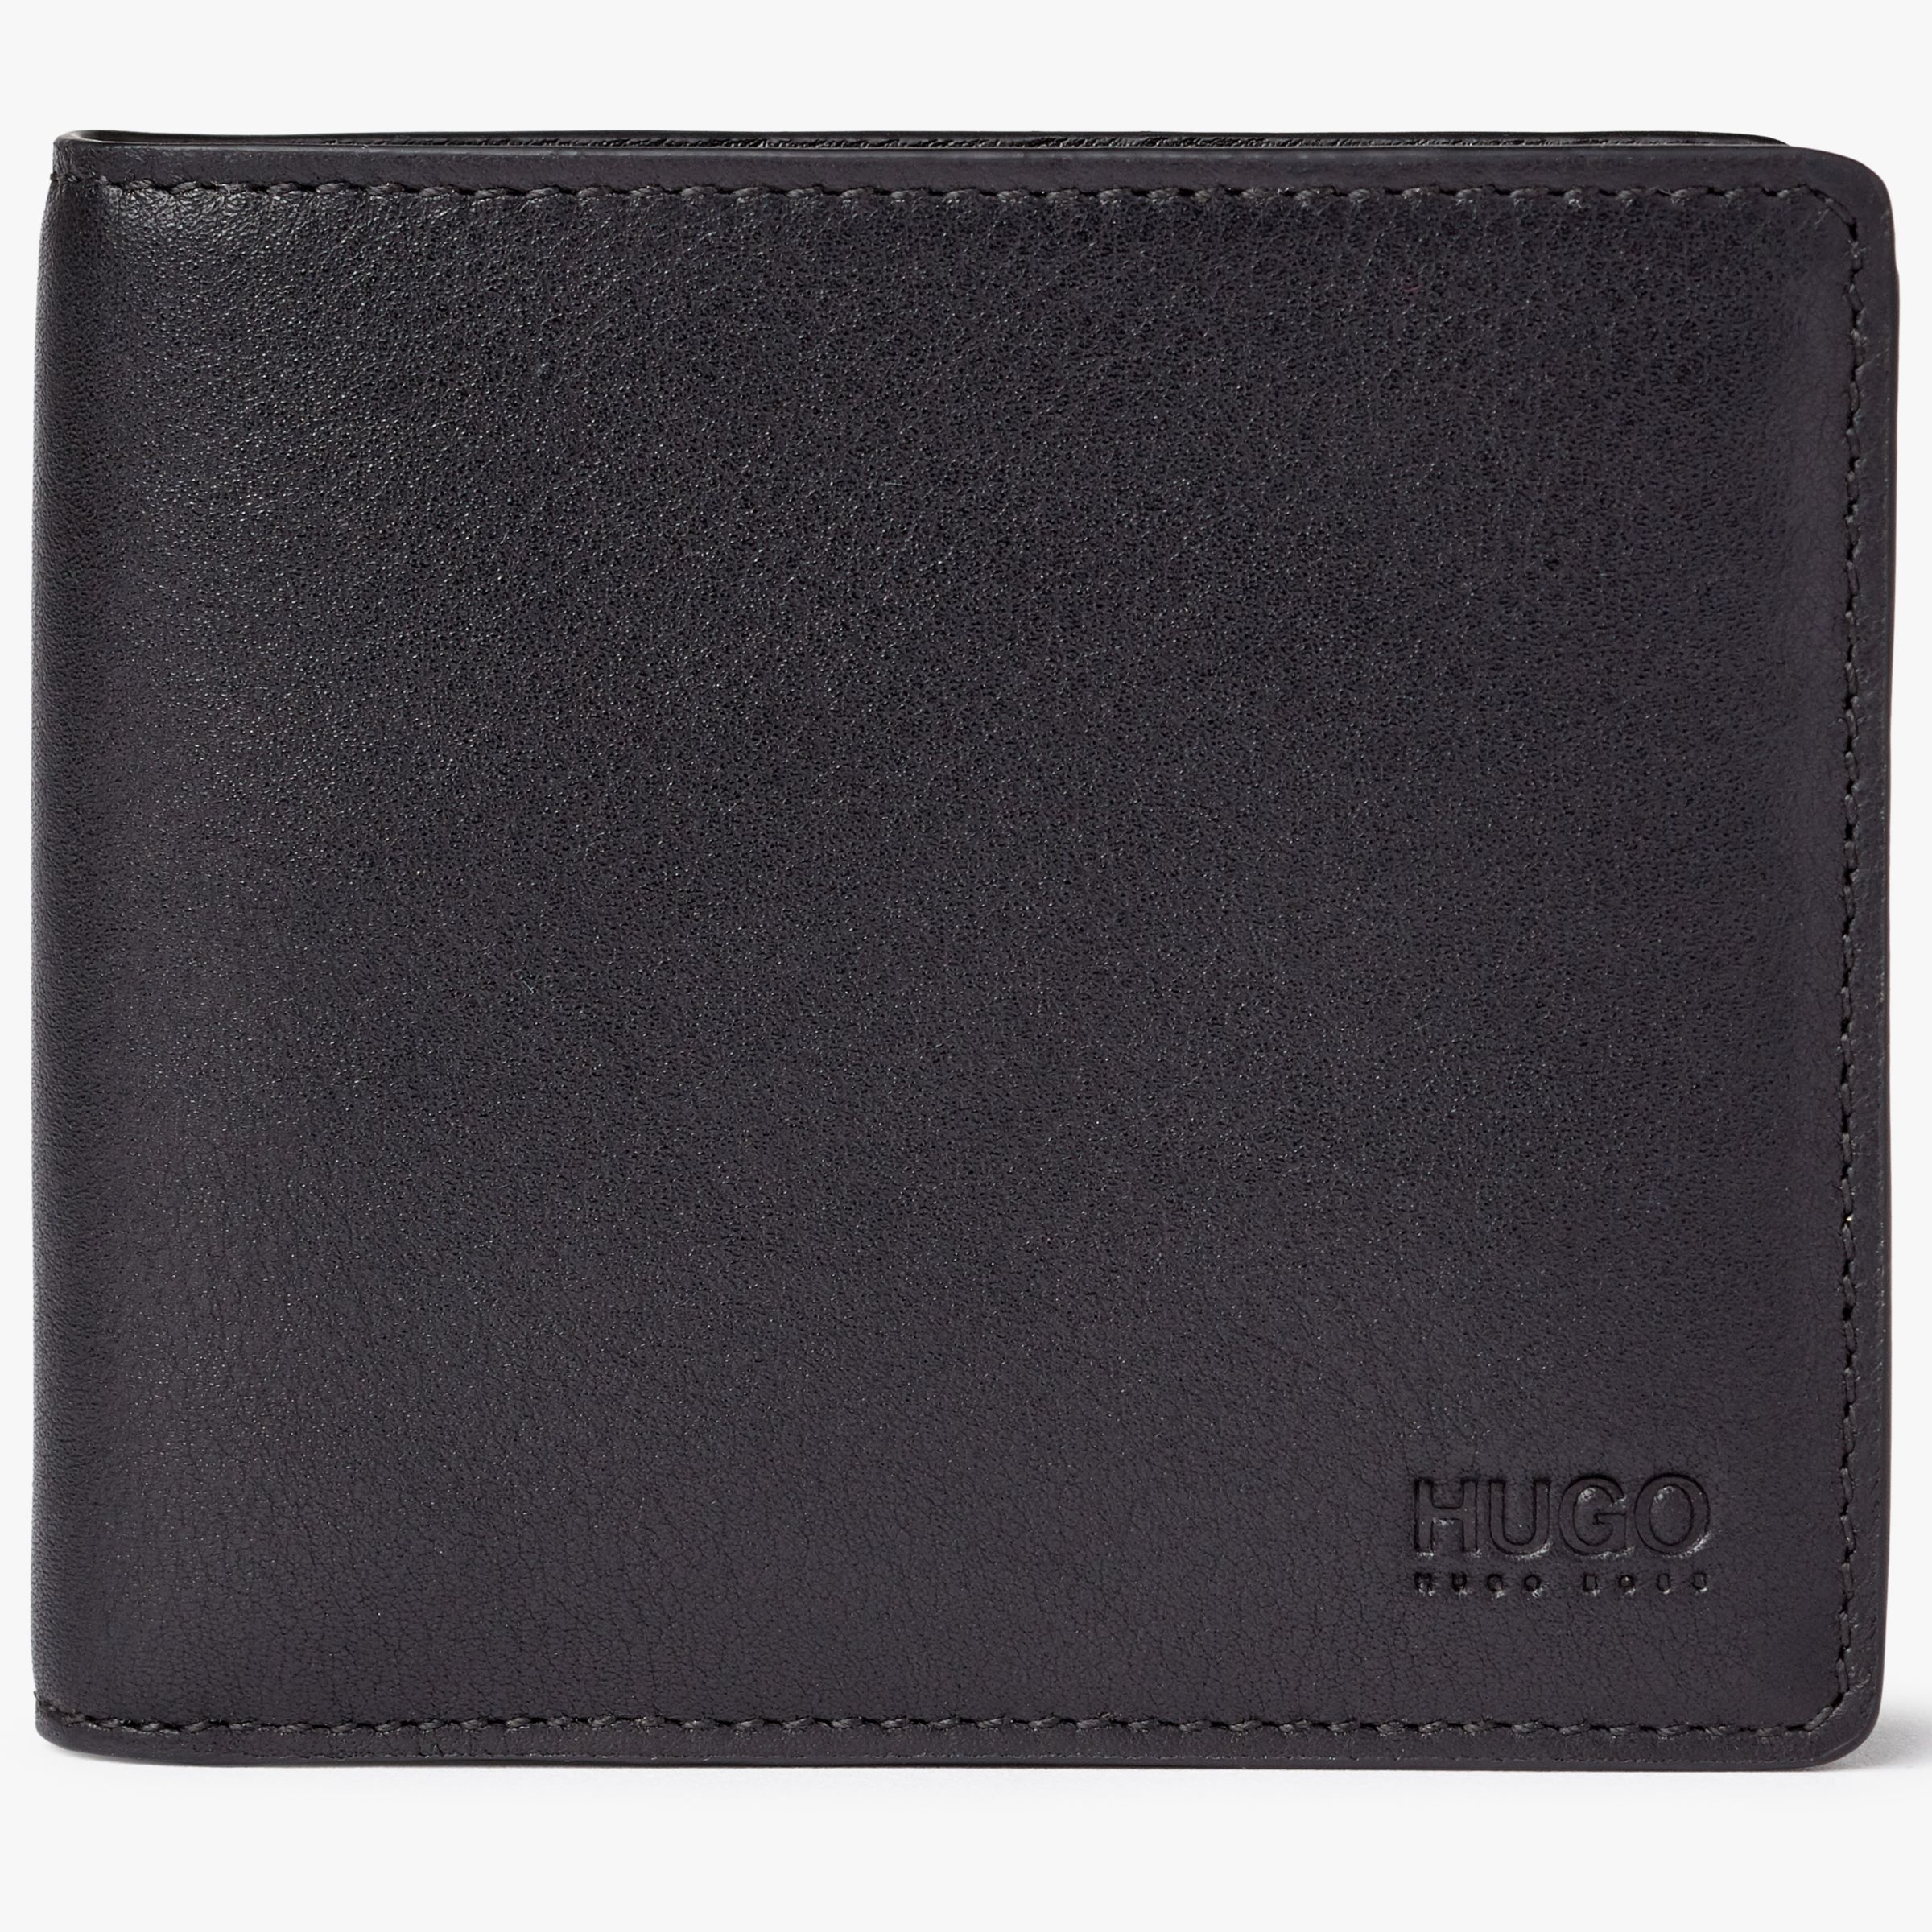 hugo boss mens wallet